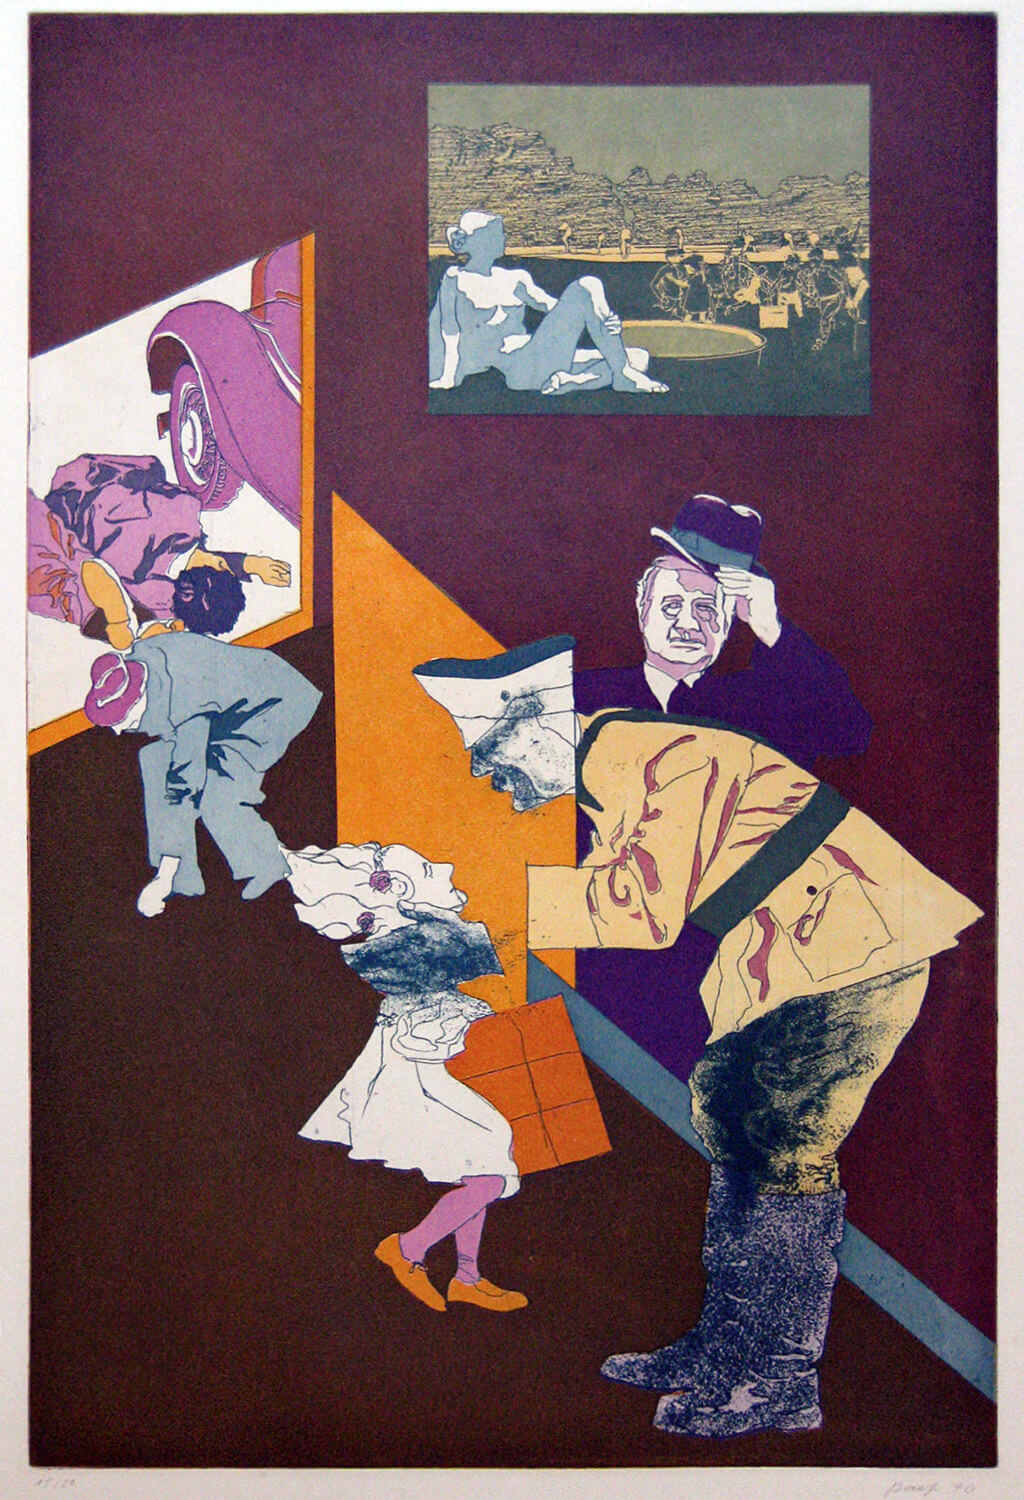 Ulrich Baehr, Sonderbeitrag: Einen Augenblick ruht die Arbeit. Der Führer fährt vorbei, 1970, Farbradierung, Auflage: 20, 76 x 54 cm, Mappe mit 5 Motiven